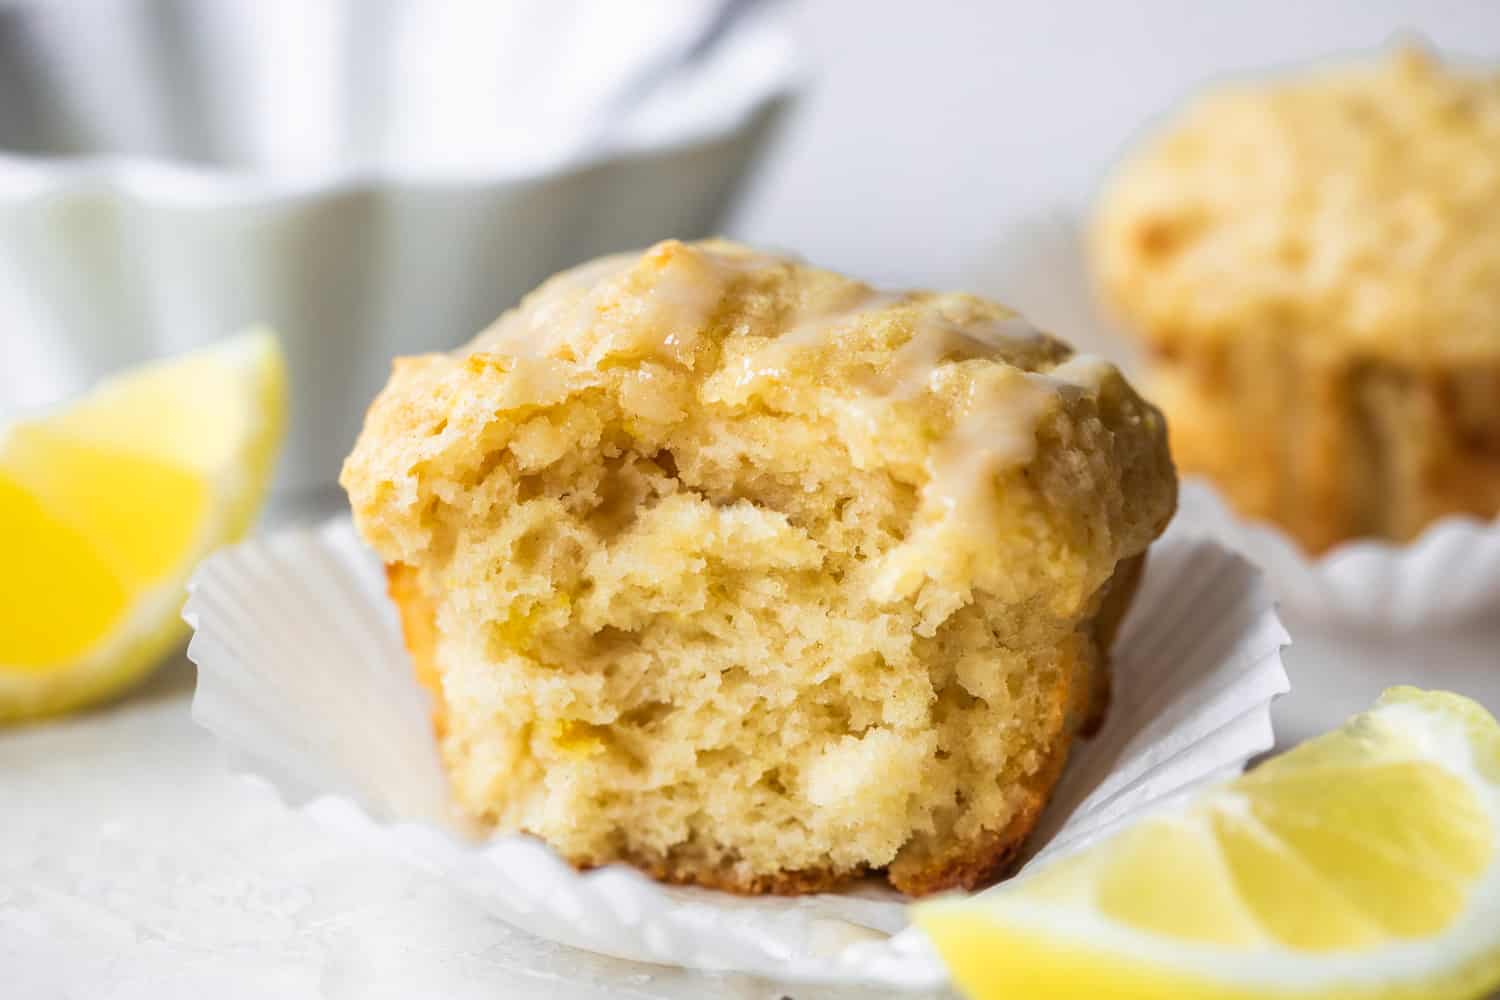 Image horizontale d'un muffin au citron cuit avec une bouchée manquante montrant une texture moelleuse. Des quartiers de citron sur le côté et un bol de glaçage derrière le muffin.